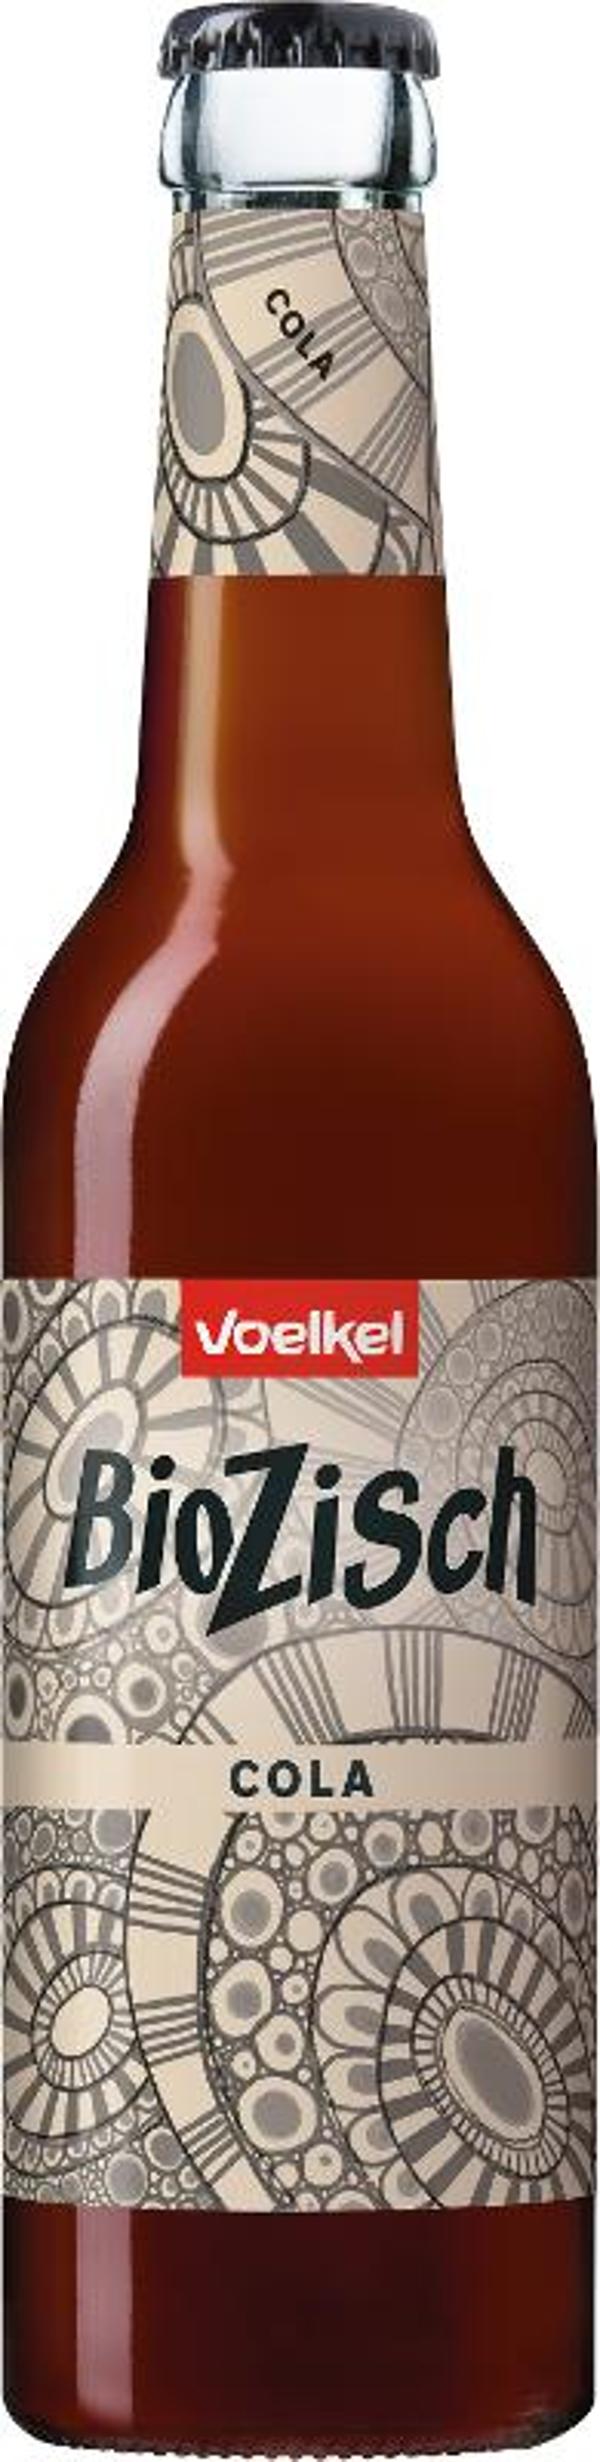 Produktfoto zu BioZisch Cola 0,33l